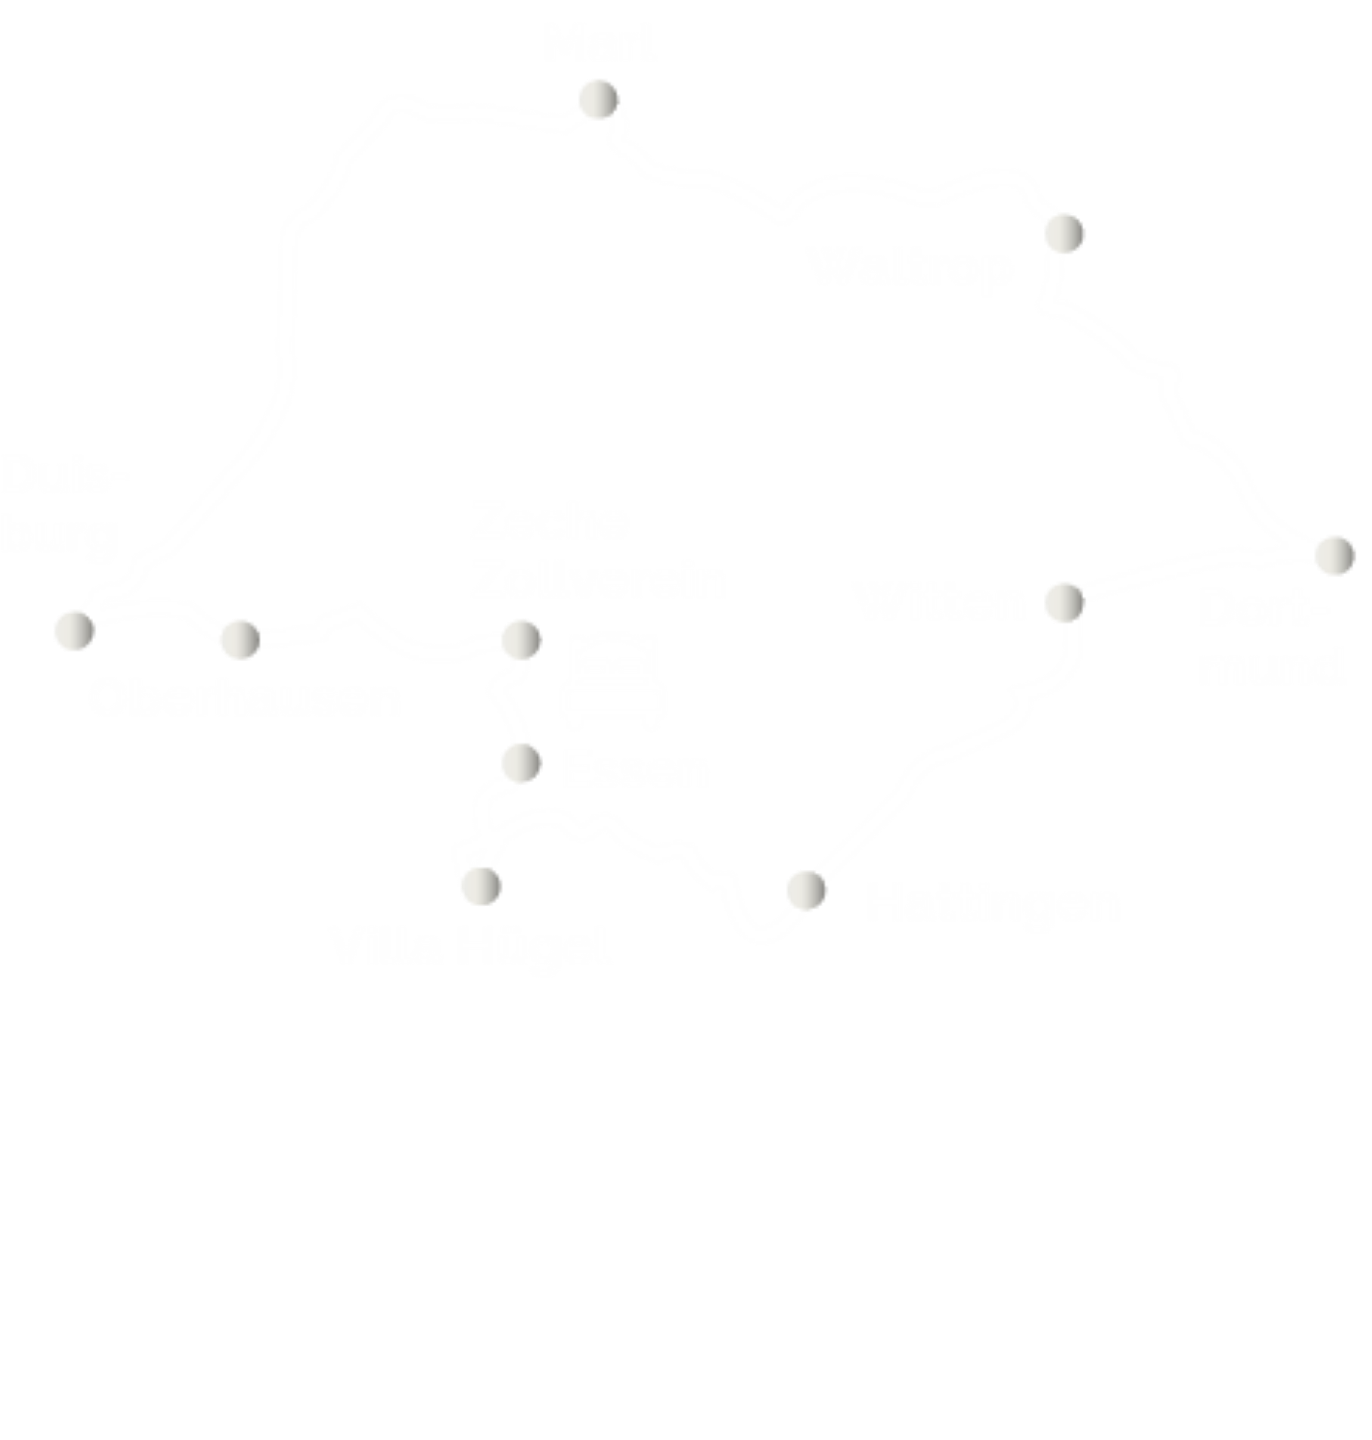 Route der Ruhrgebiet-Tour